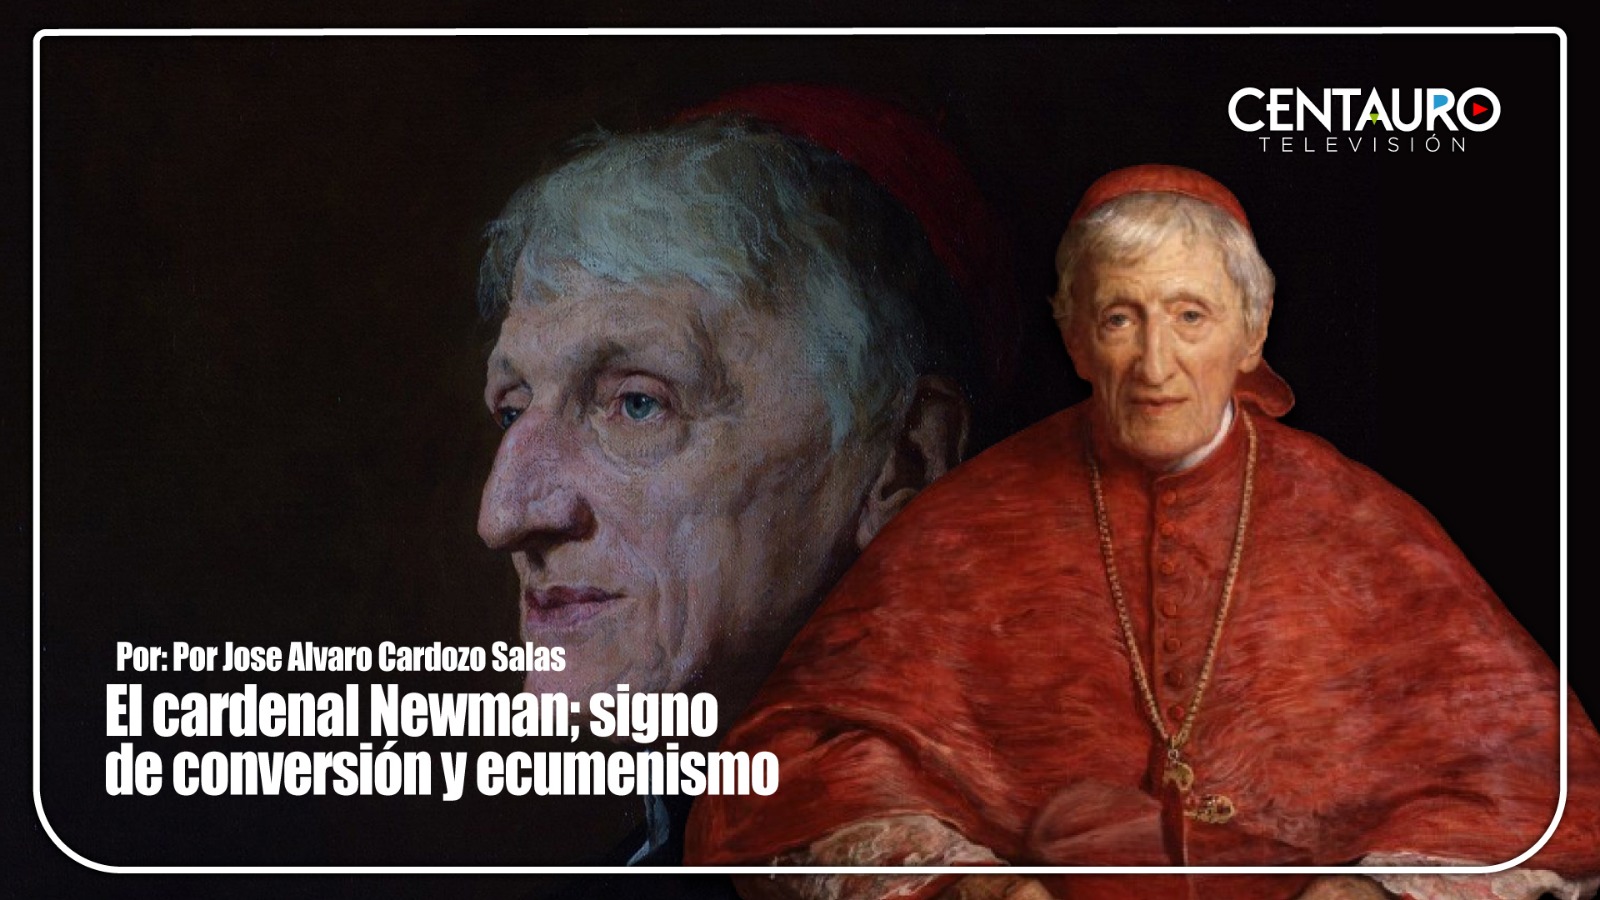 El cardenal Newman; signo de conversión y ecumenismo.